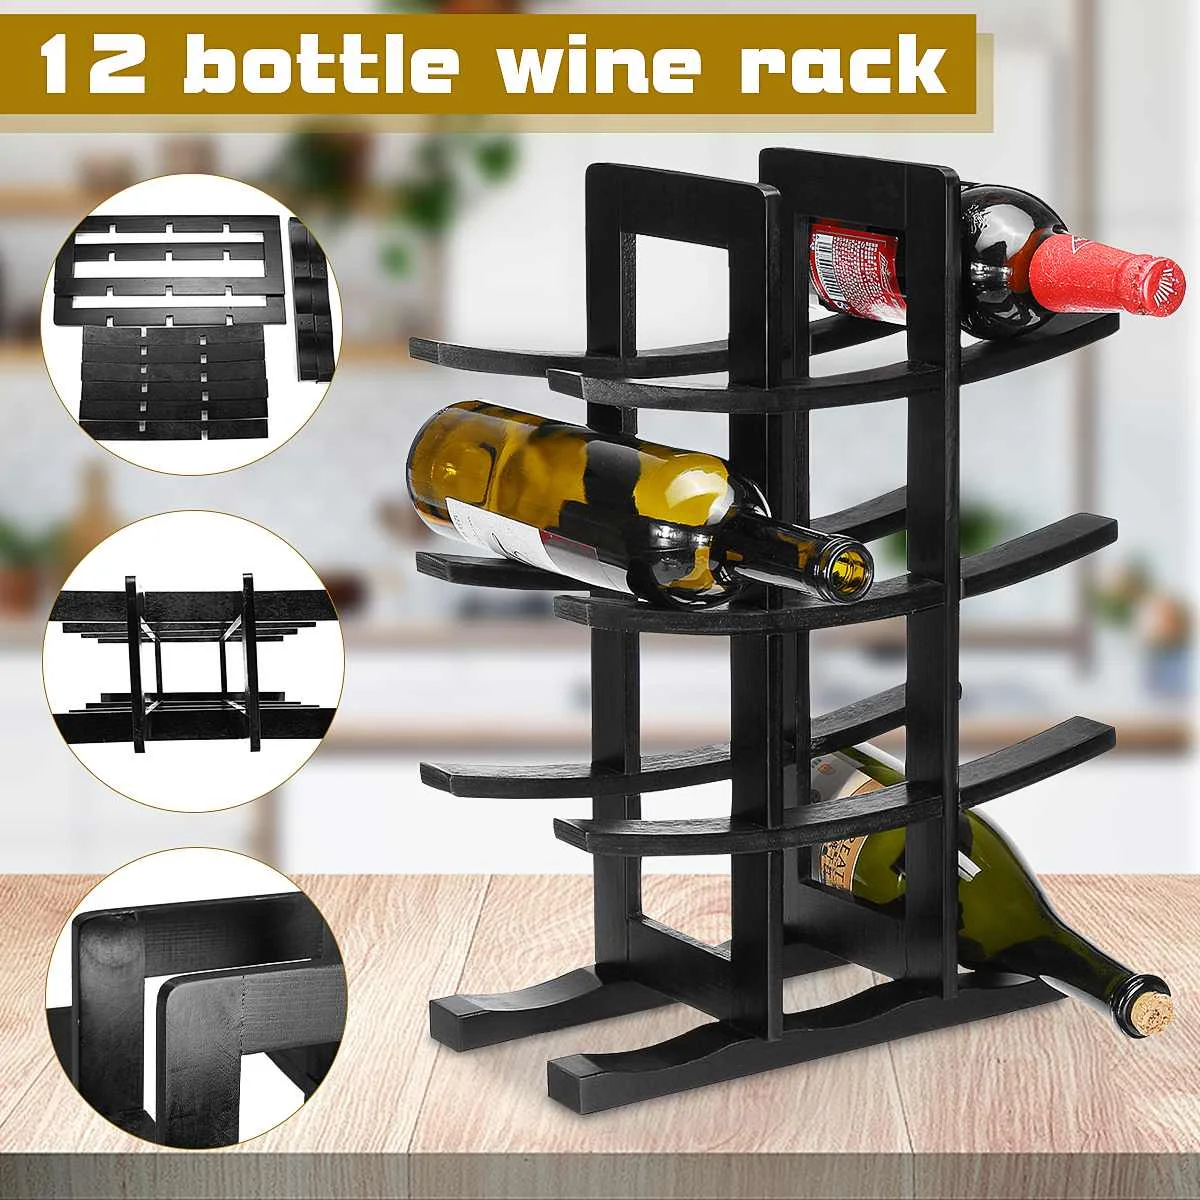 12 Bottle Red Wine Rack Wooden Holder Mount Bar Display Shelf